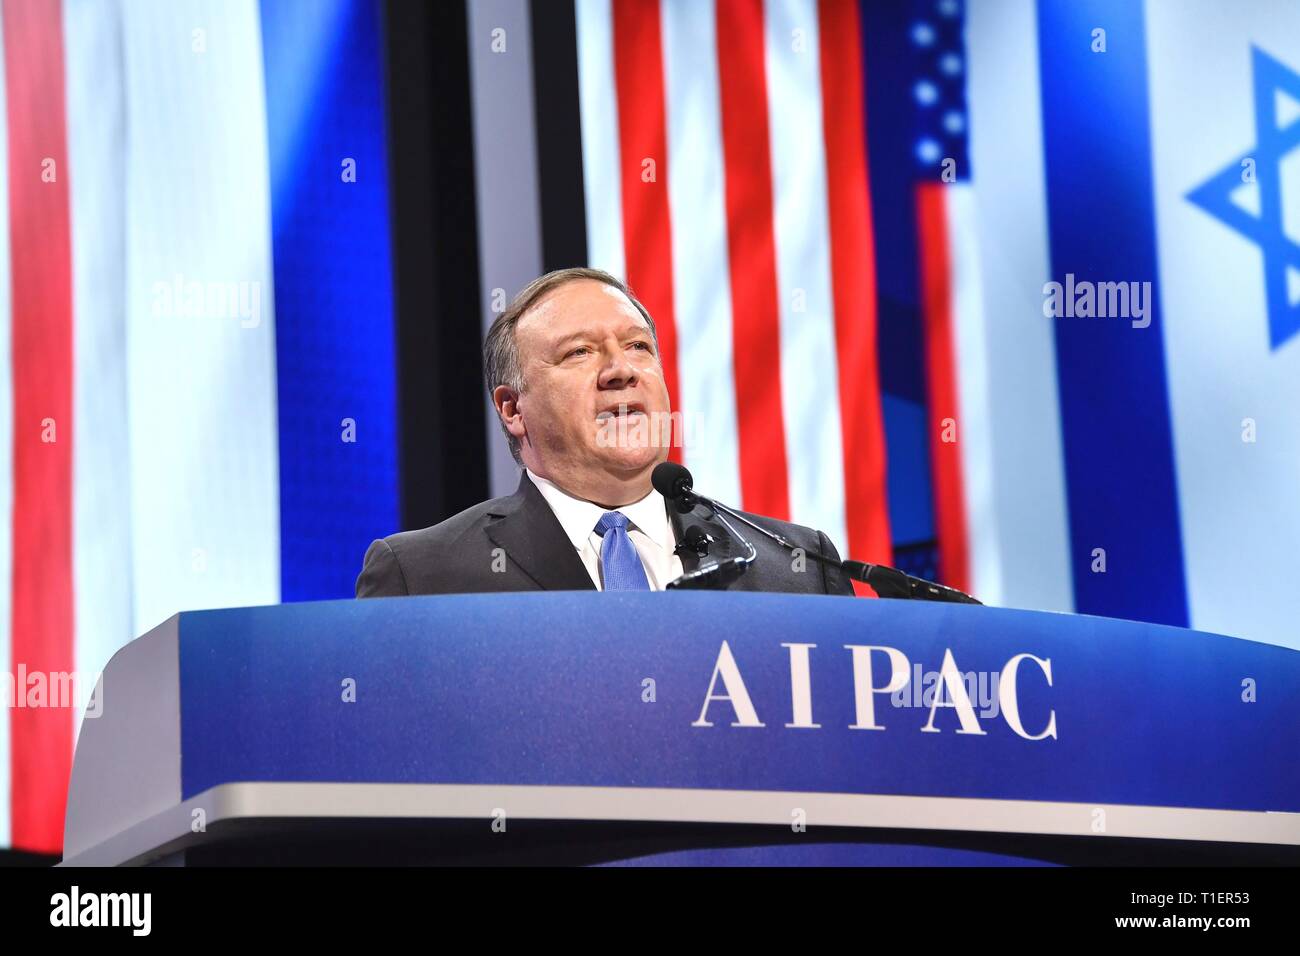 Us-Staatssekretär Mike Pompeo liefert Erläuterungen bei der Aipac-Konferenz am 25. März 2019 in Washington, D.C. Das American Israel Public Affairs Committee ist eine Interessenvertretung, die sich für pro-israelische Politik zu der Kongress und die Exekutive der Vereinigten Staaten. Stockfoto